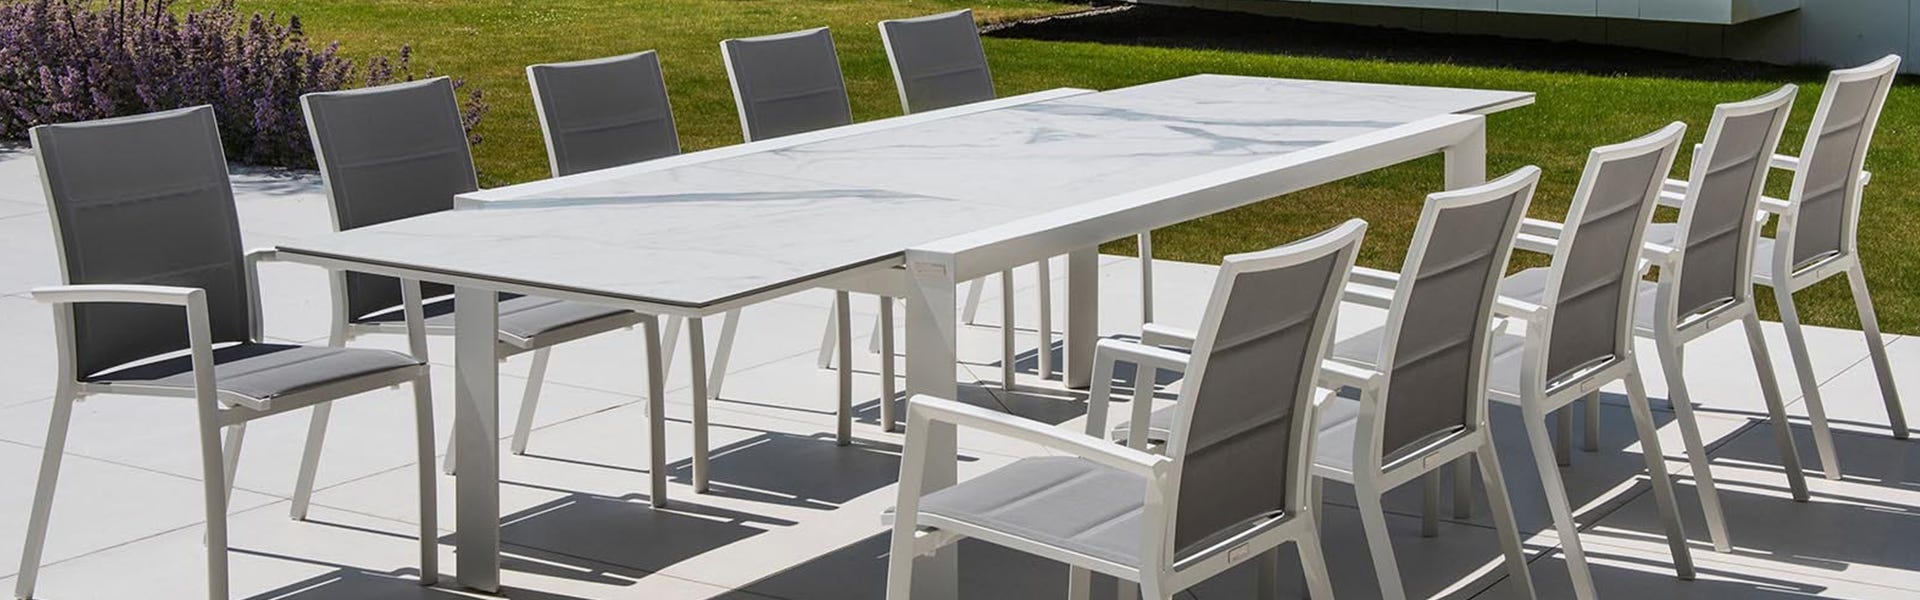 Ceramic Table with Aluminium Chairs 